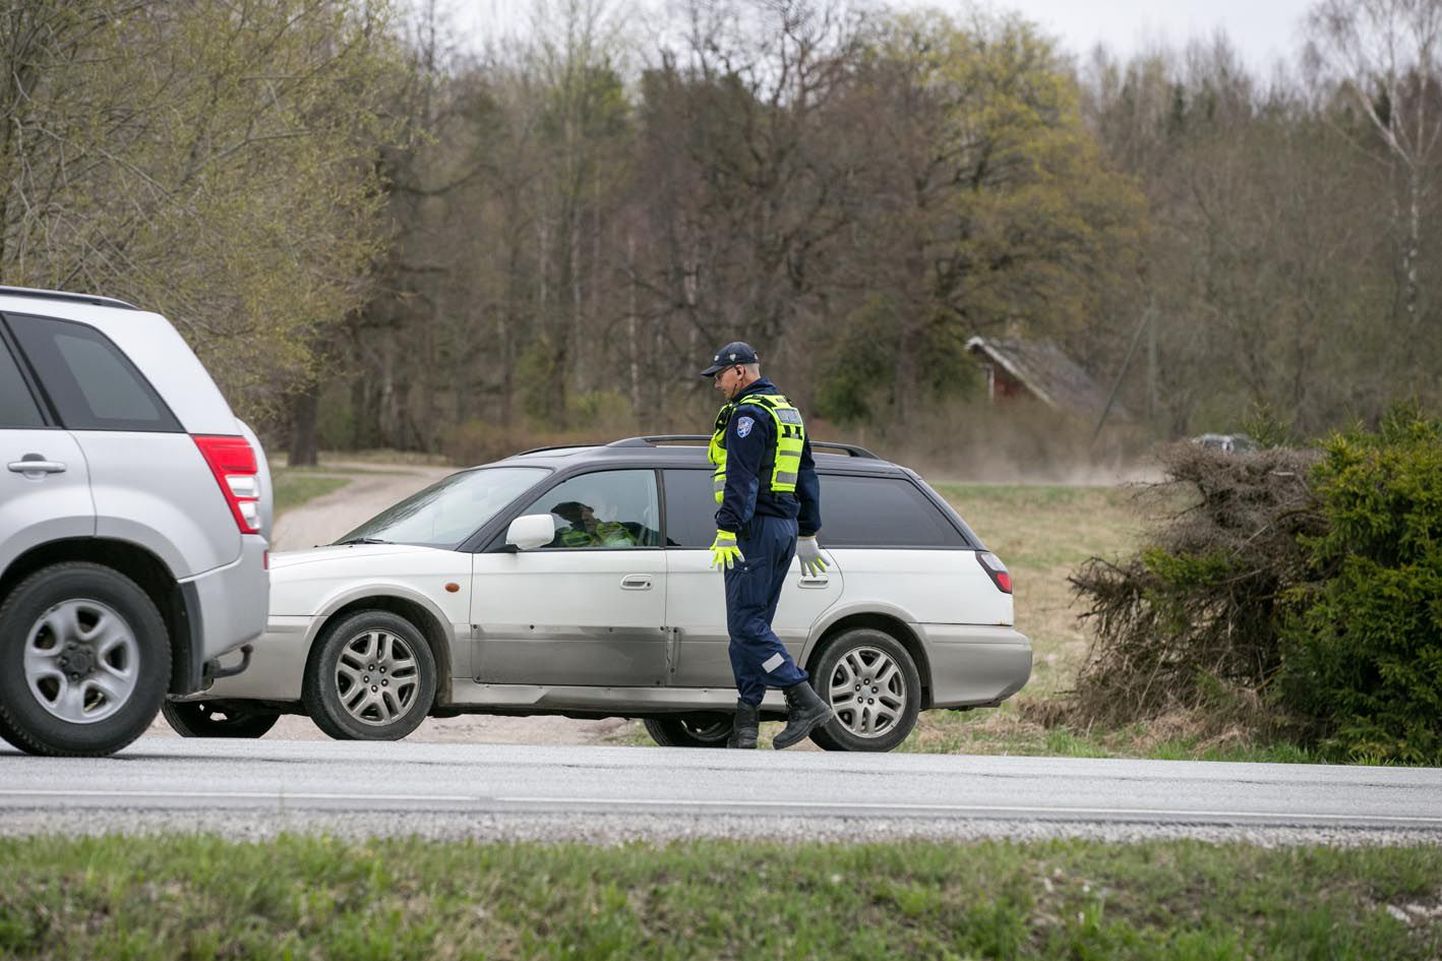 Kui sõidate Tallinna–Tartu maanteel kiirusega 132 km/h (nagu eelmisel nädalal üks Subaru juht tegi, vt kiirusmõõdiku pilti), võite olla üsna kindel, et kohtute kiirust mõõtvate korrakaitsjatega.